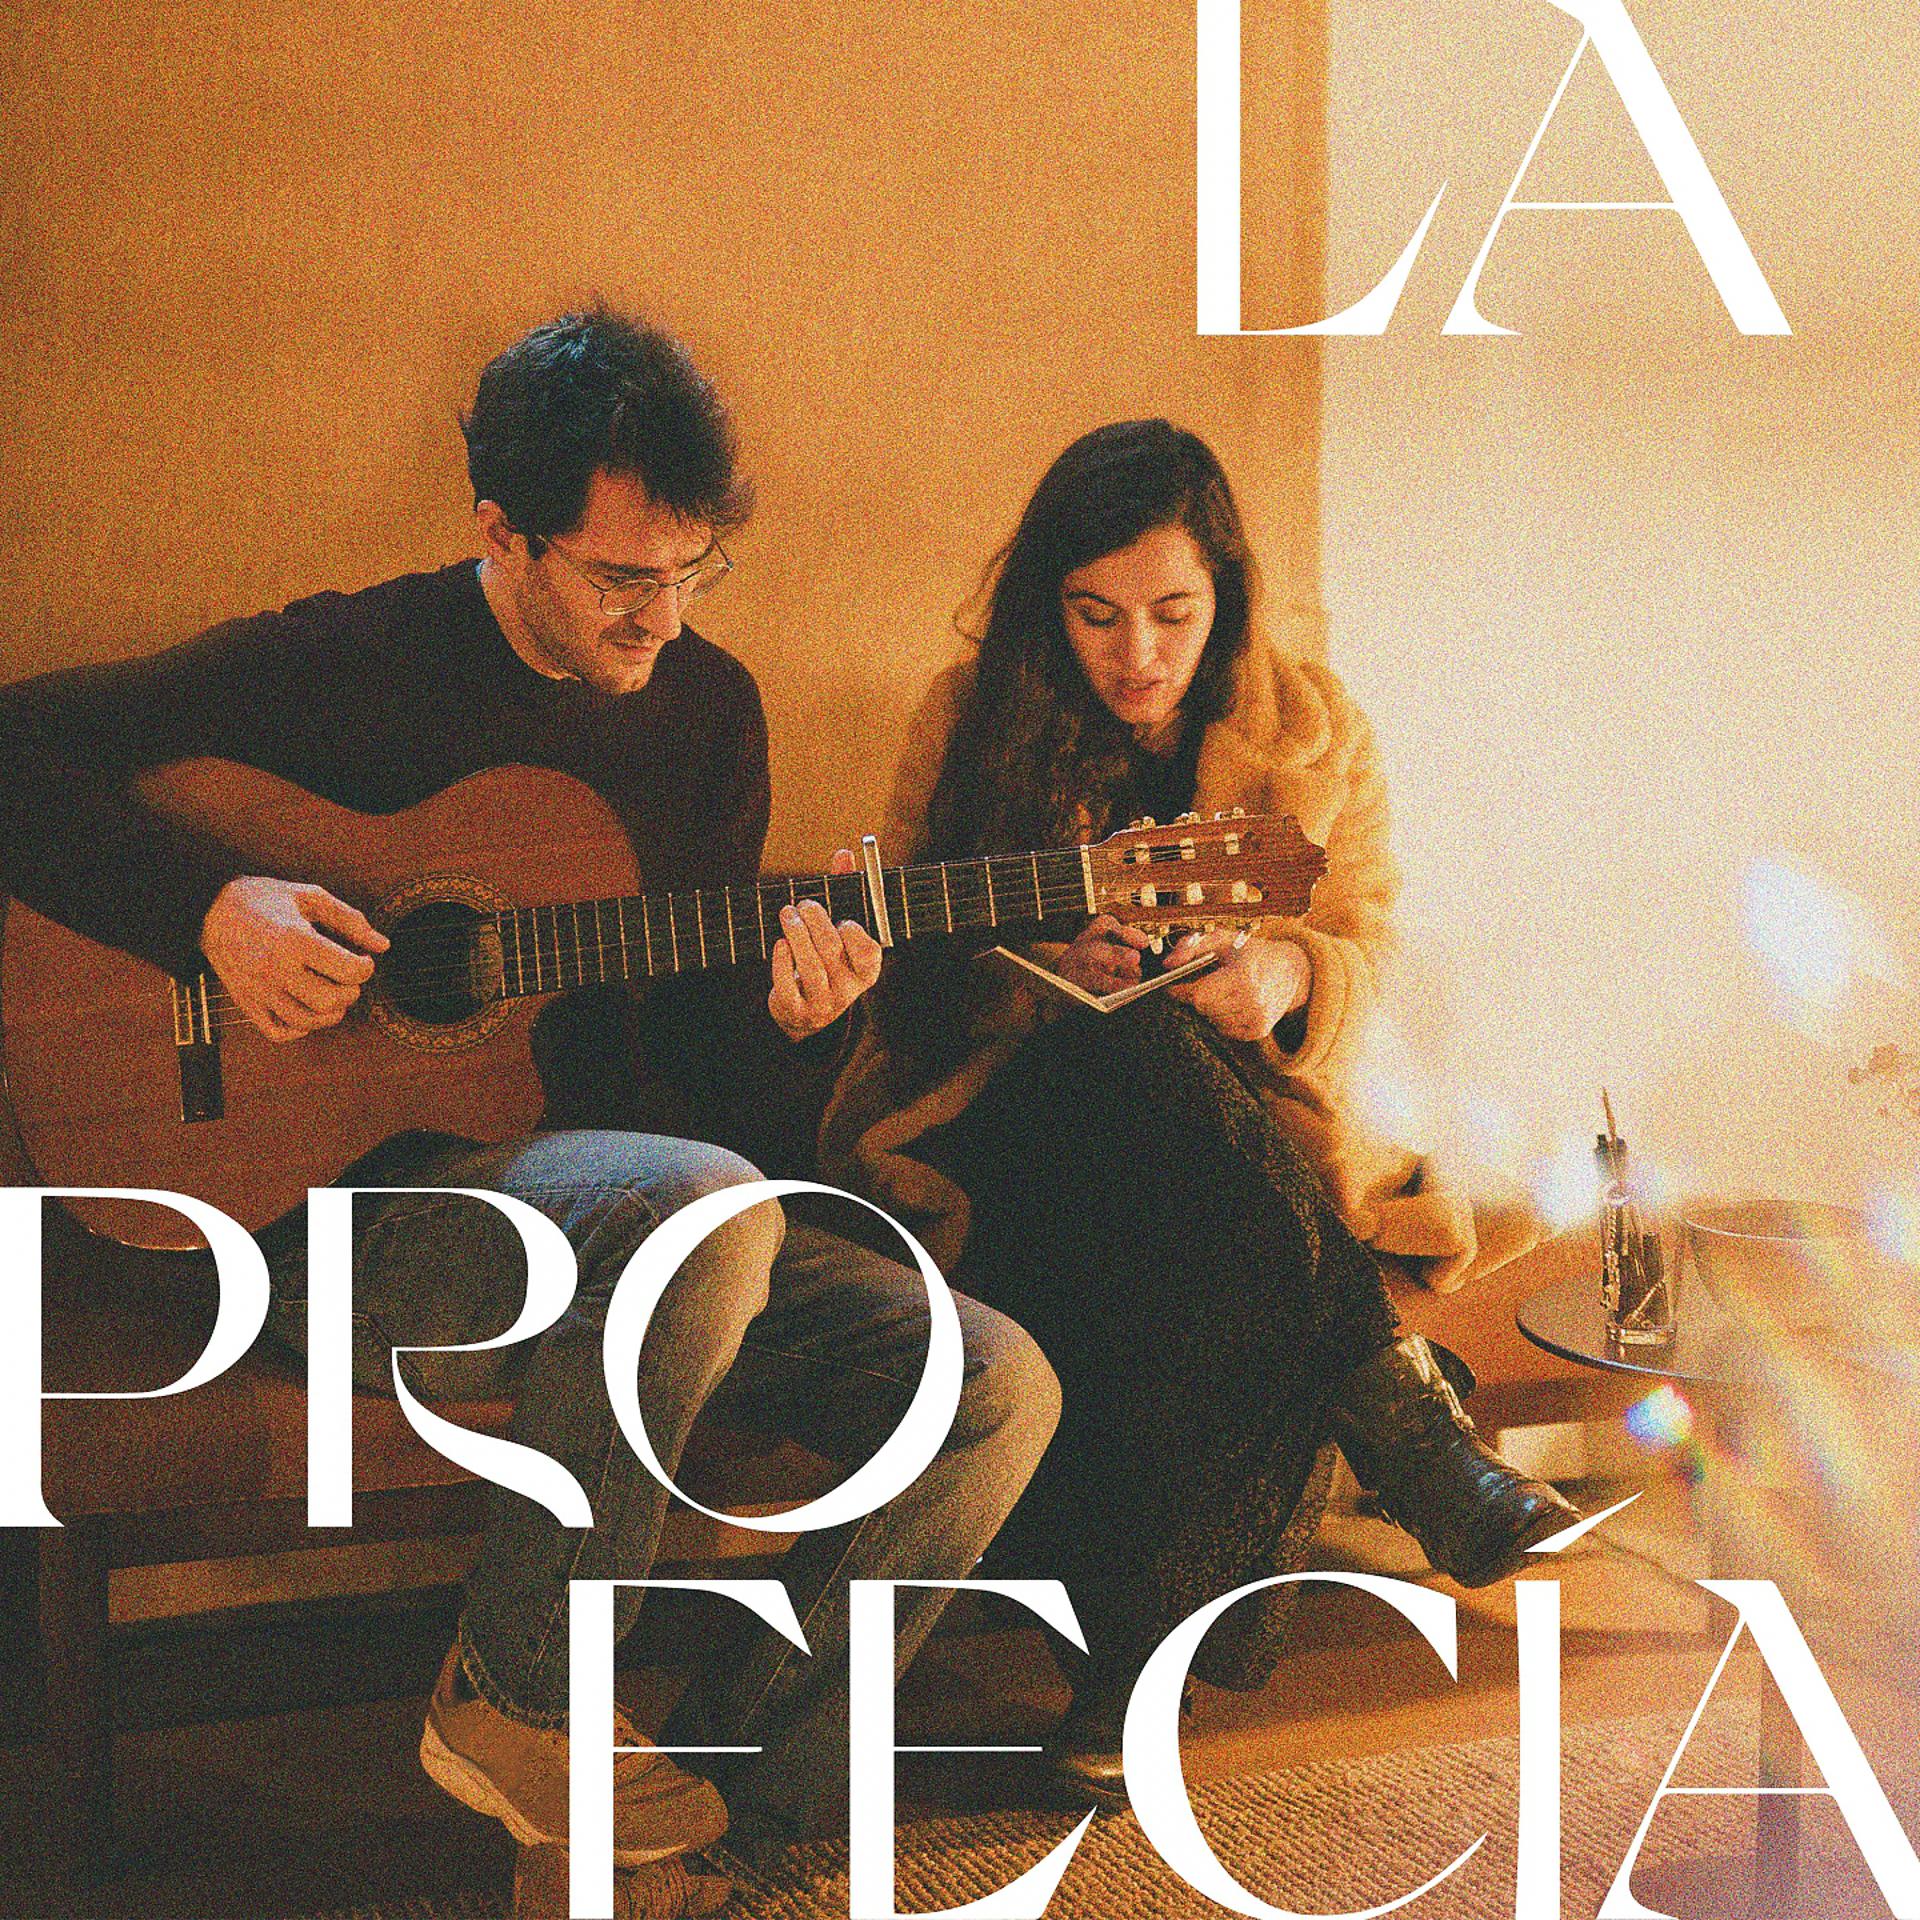 Постер альбома La Profecía